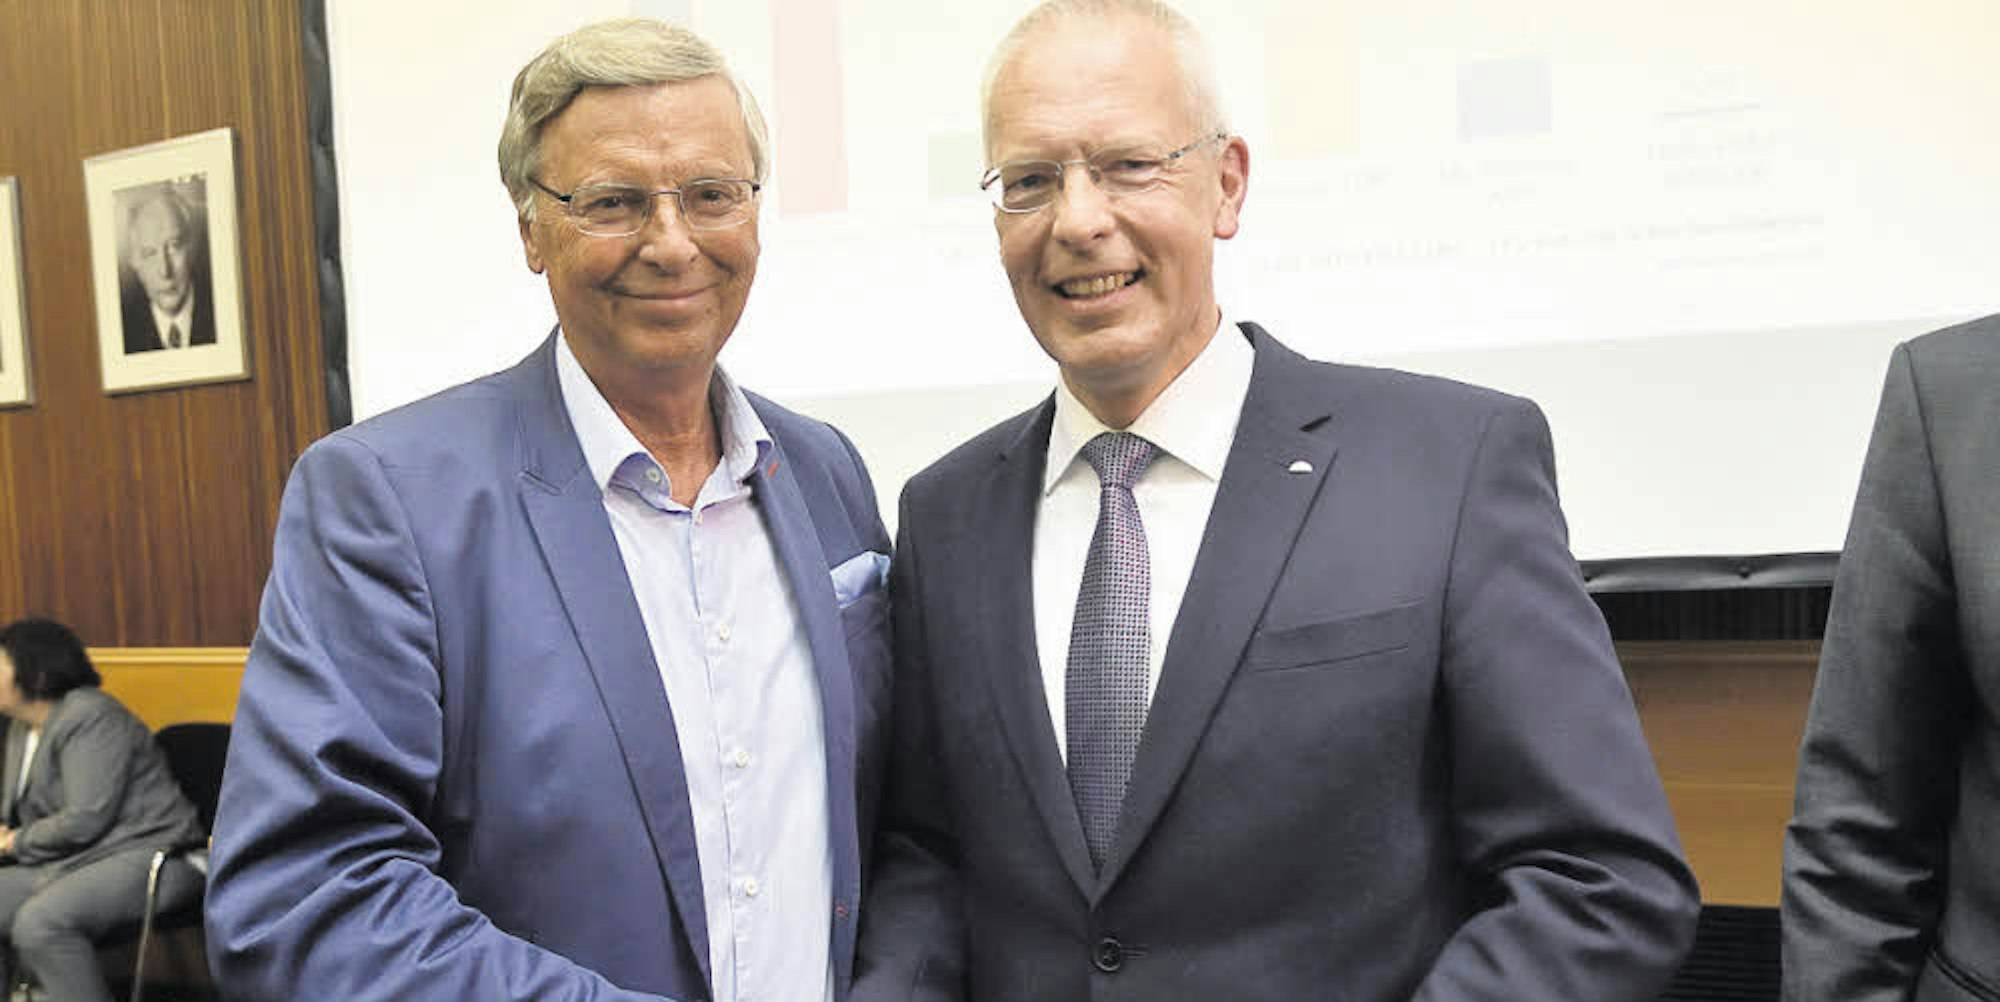 Ein Handschlag für die Fotografen: Der direkt gewählte Bundestagsabgeordnete für den Rheinisch-Bergischen Kreis, Hermann-Josef Tebroke (rechts), mit seinem Vorgänger Wolfgang Bosbach.